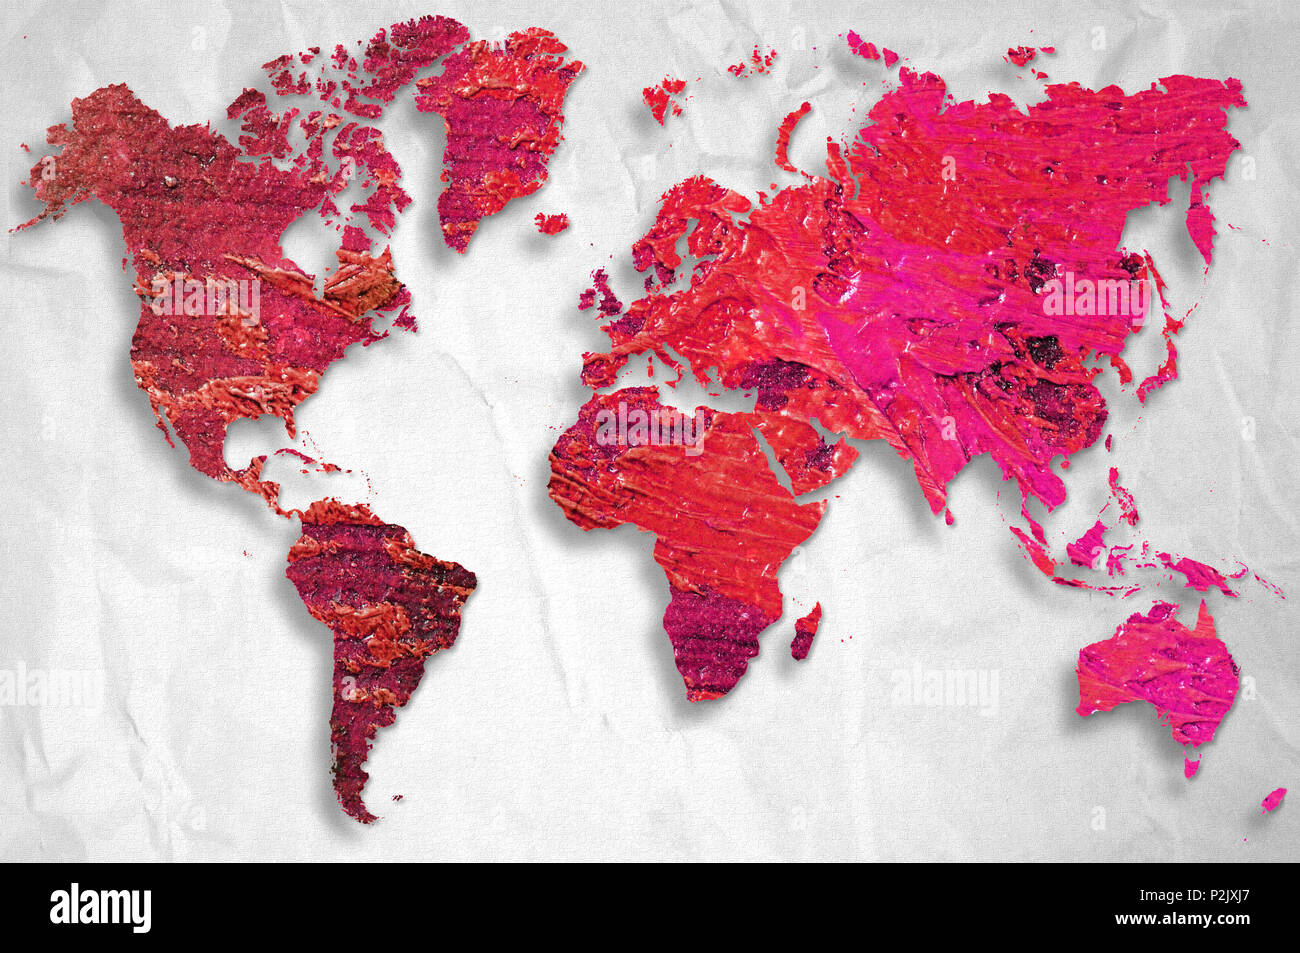 Weltkarte mit künstlerischen Ölfarben auf Stoff Hintergrund. Elemente  dieses Bild von der NASA eingerichtet Stockfotografie - Alamy